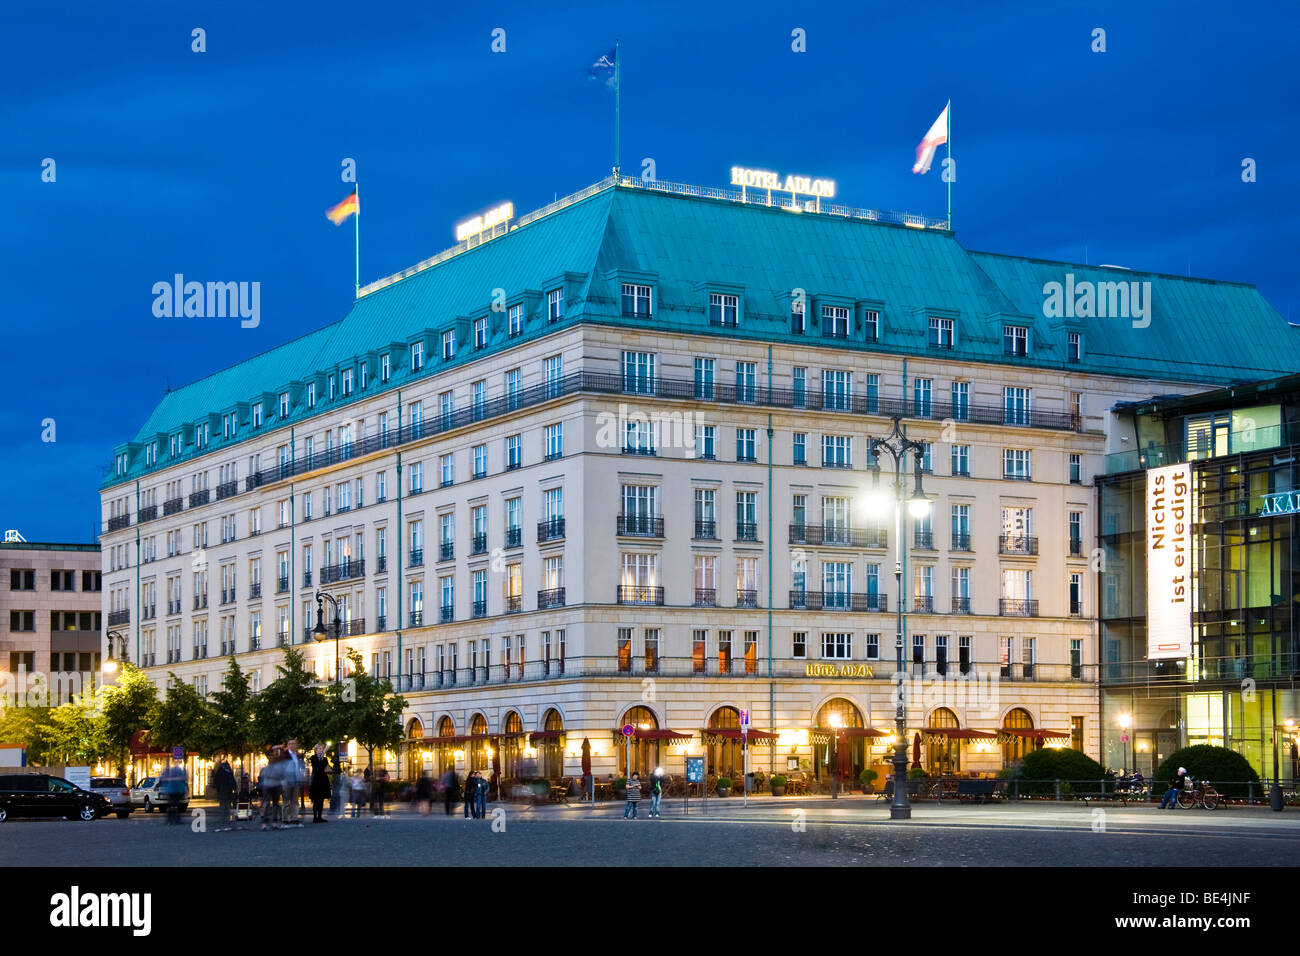 Hotel Adlon, Pariser Platz, Unter den Linden, Mitte, Berlin, Germany, Europe Stock Photo